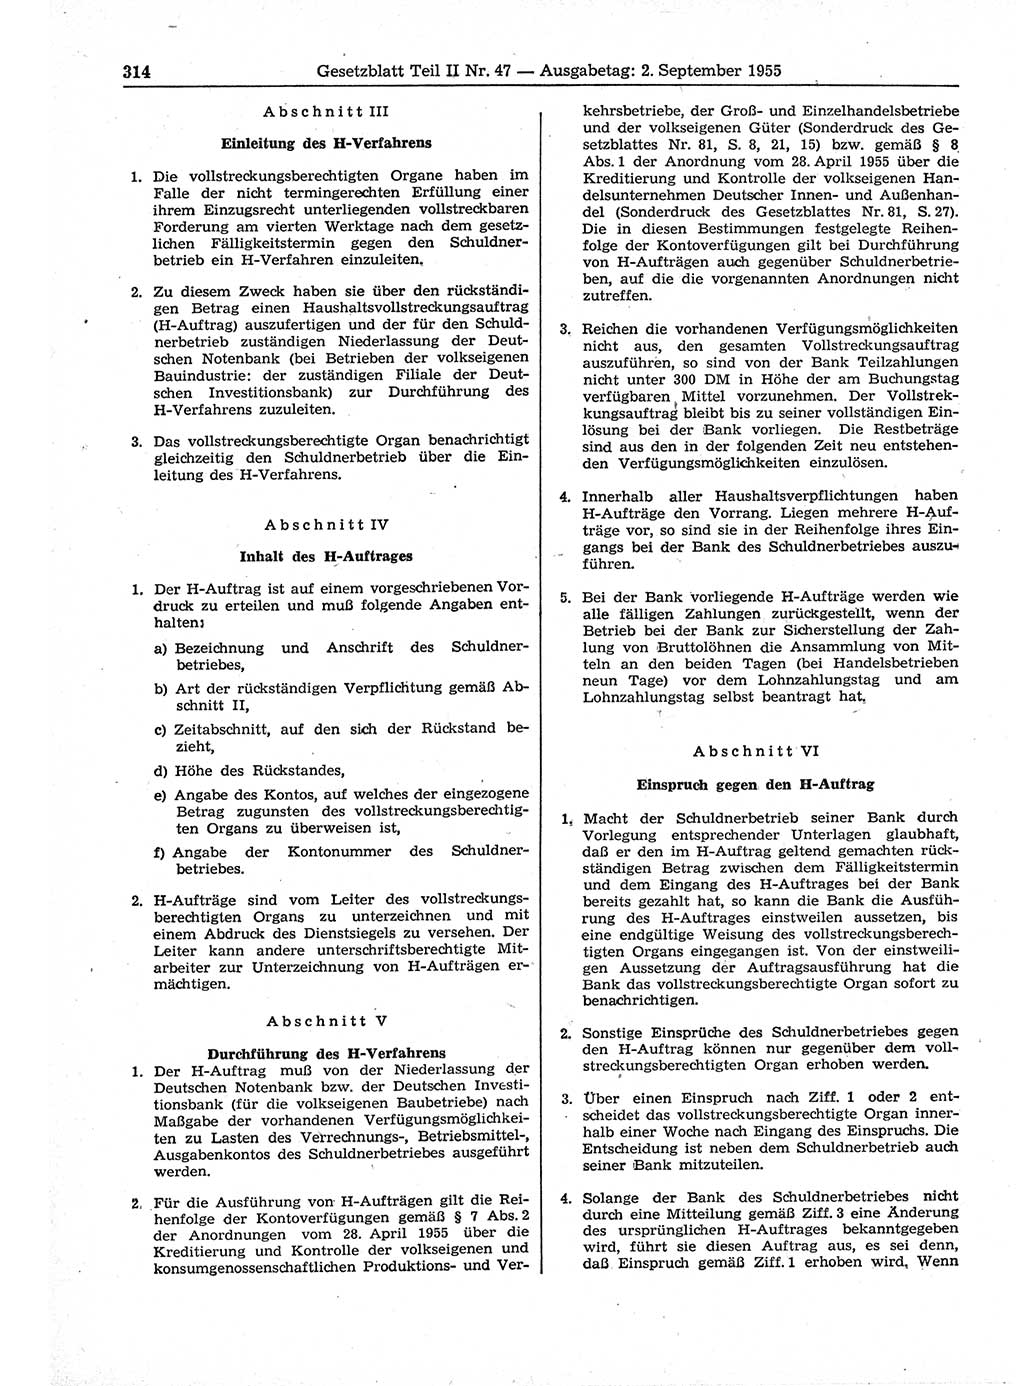 Gesetzblatt (GBl.) der Deutschen Demokratischen Republik (DDR) Teil ⅠⅠ 1955, Seite 314 (GBl. DDR ⅠⅠ 1955, S. 314)